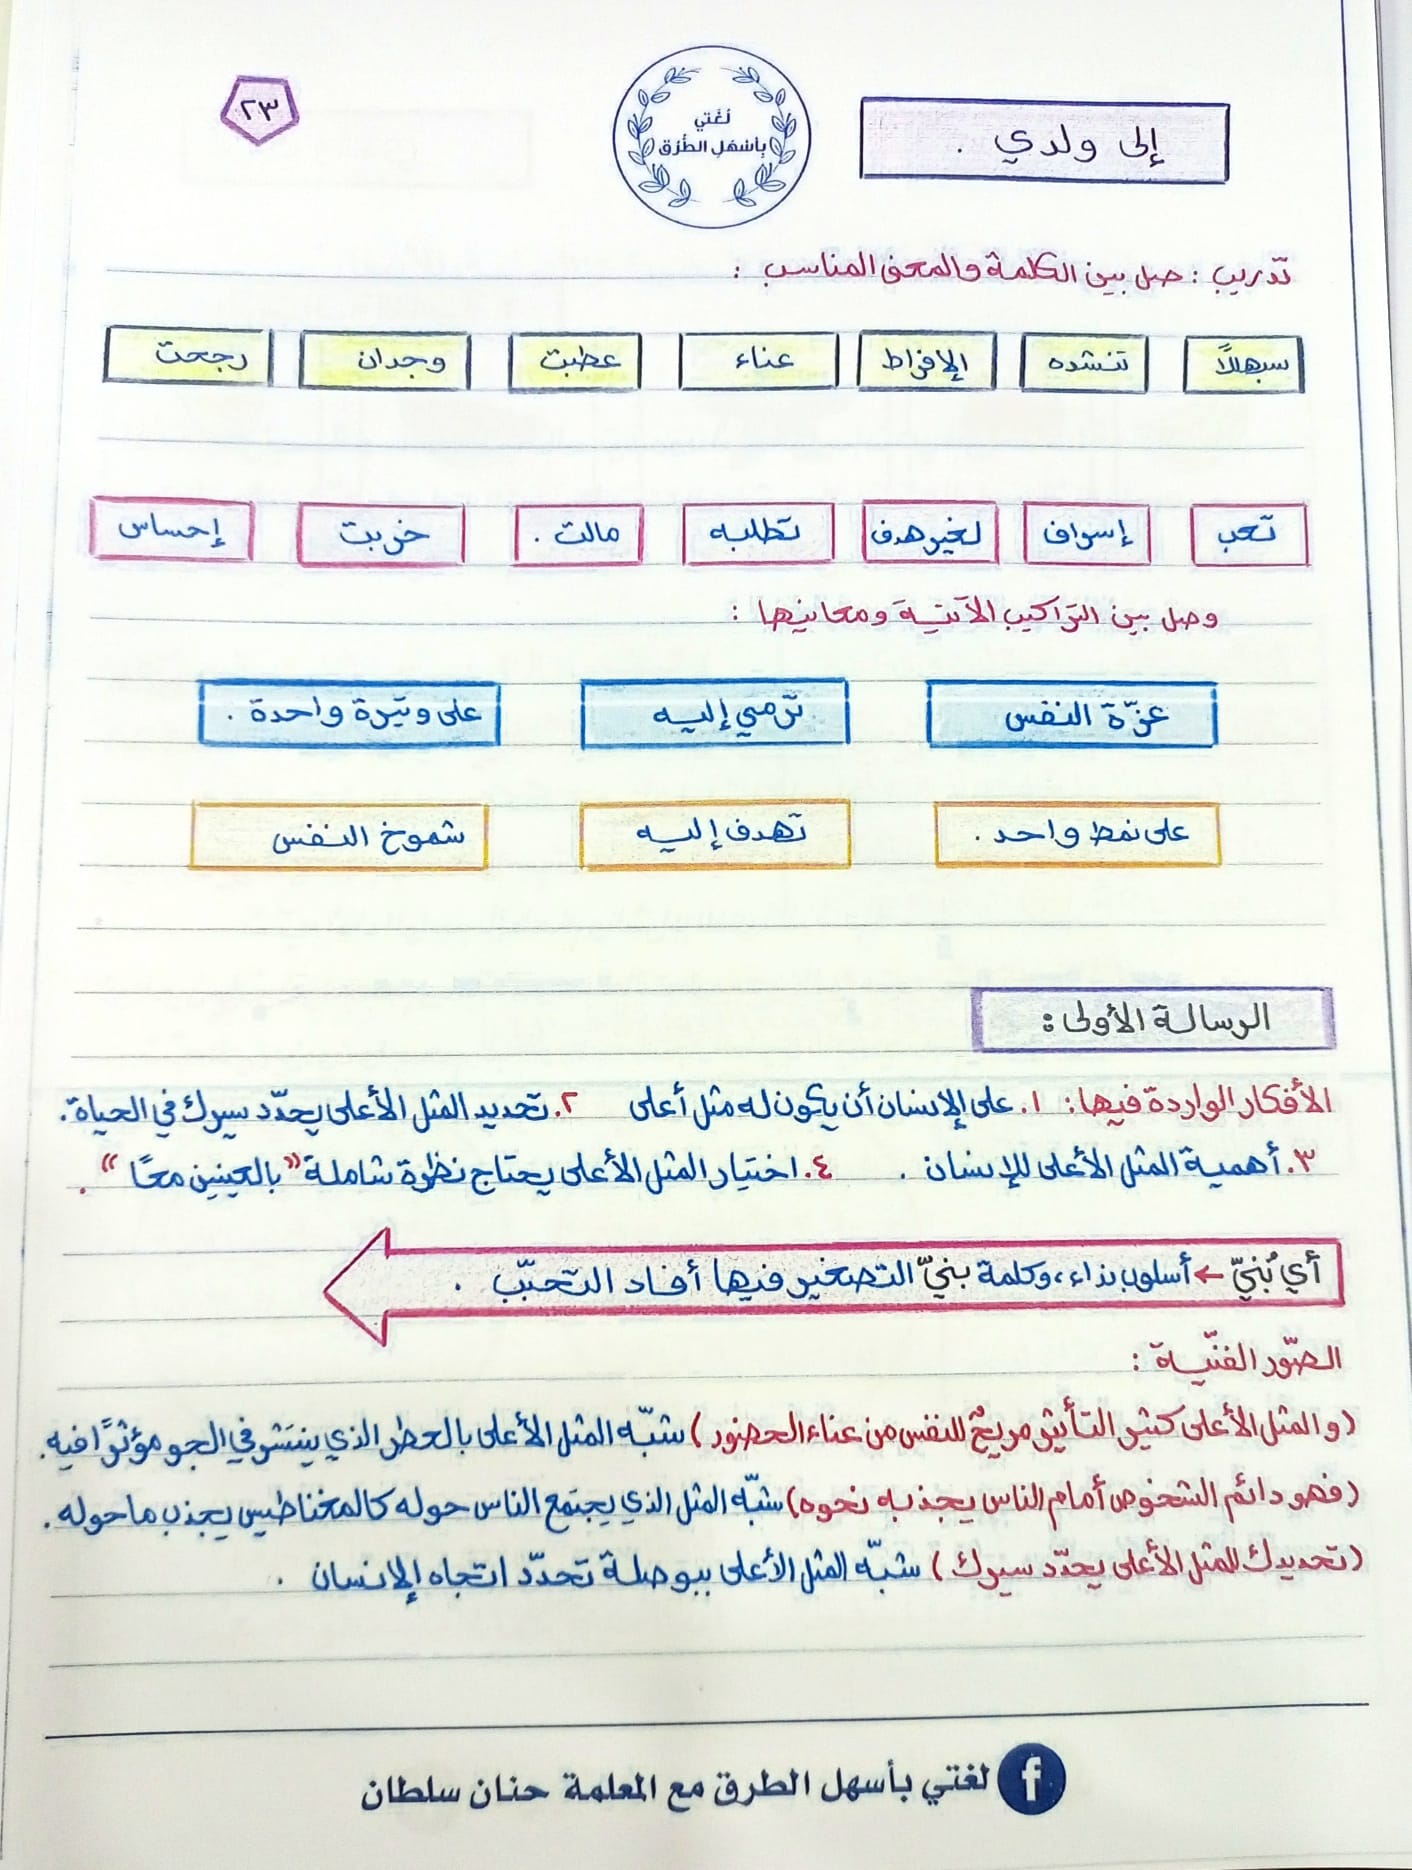 NDI1OTY5MQ22222 بالصور شرح درس الى ولدي مادة اللغة العربية للصف التاسع الفصل الثاني 2022